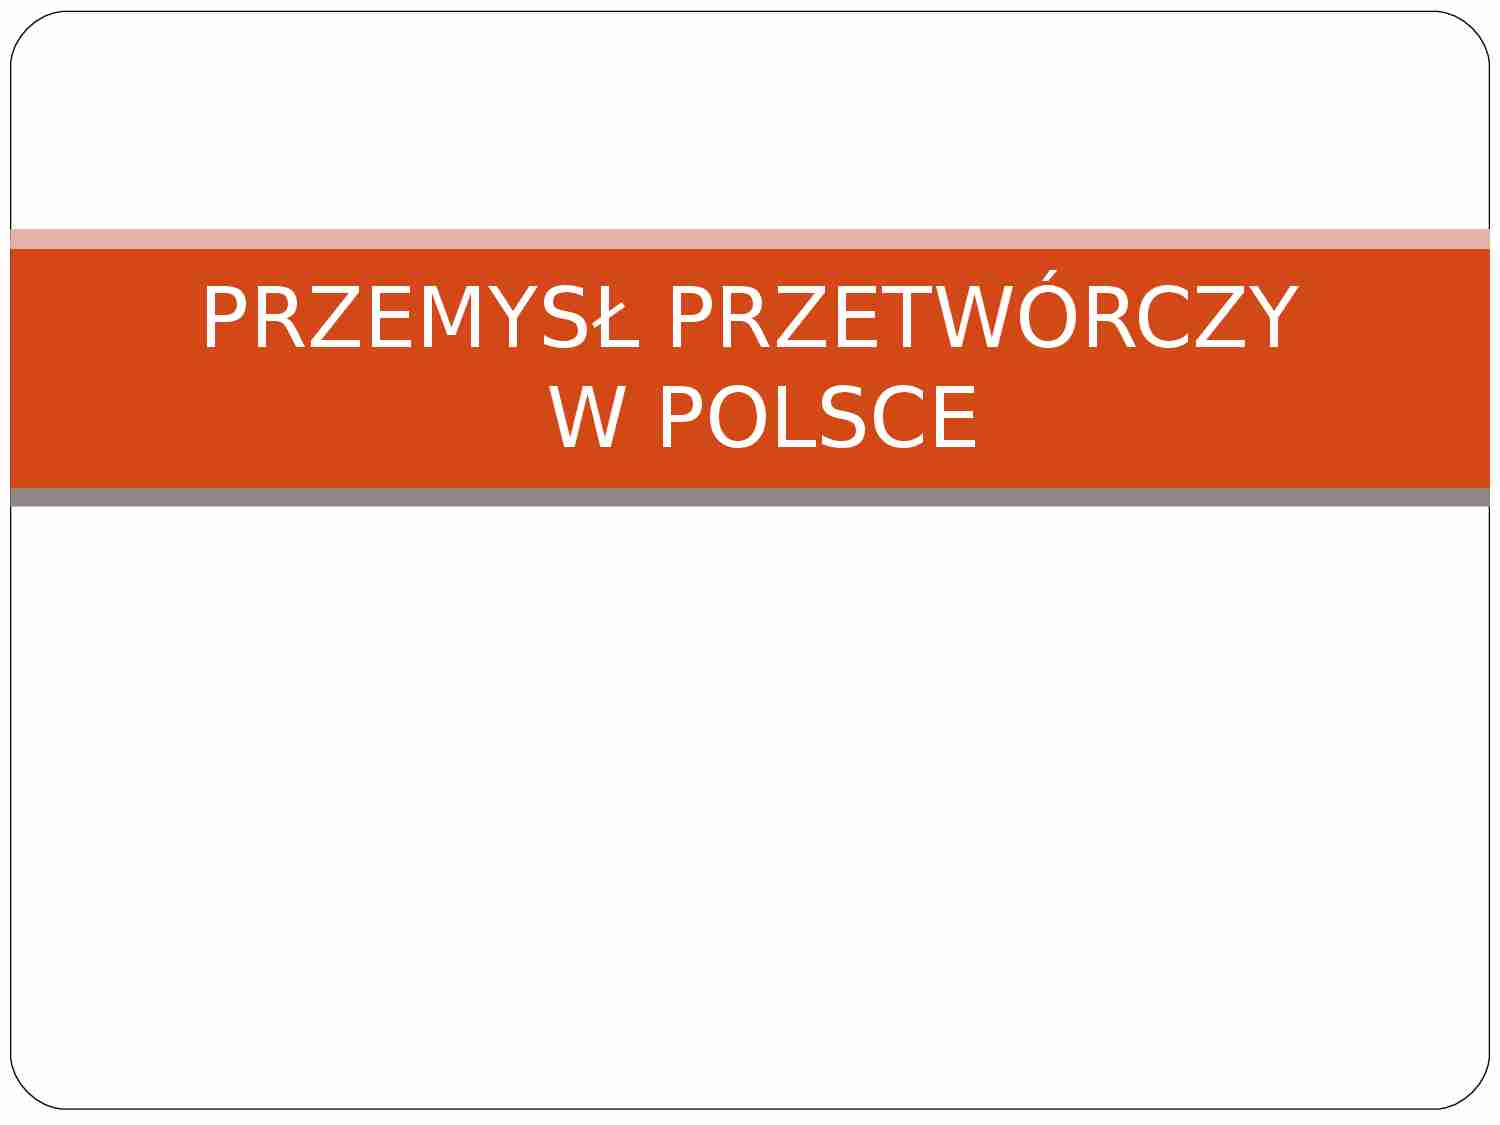 Przemysł przetwórczy w Polsce - strona 1